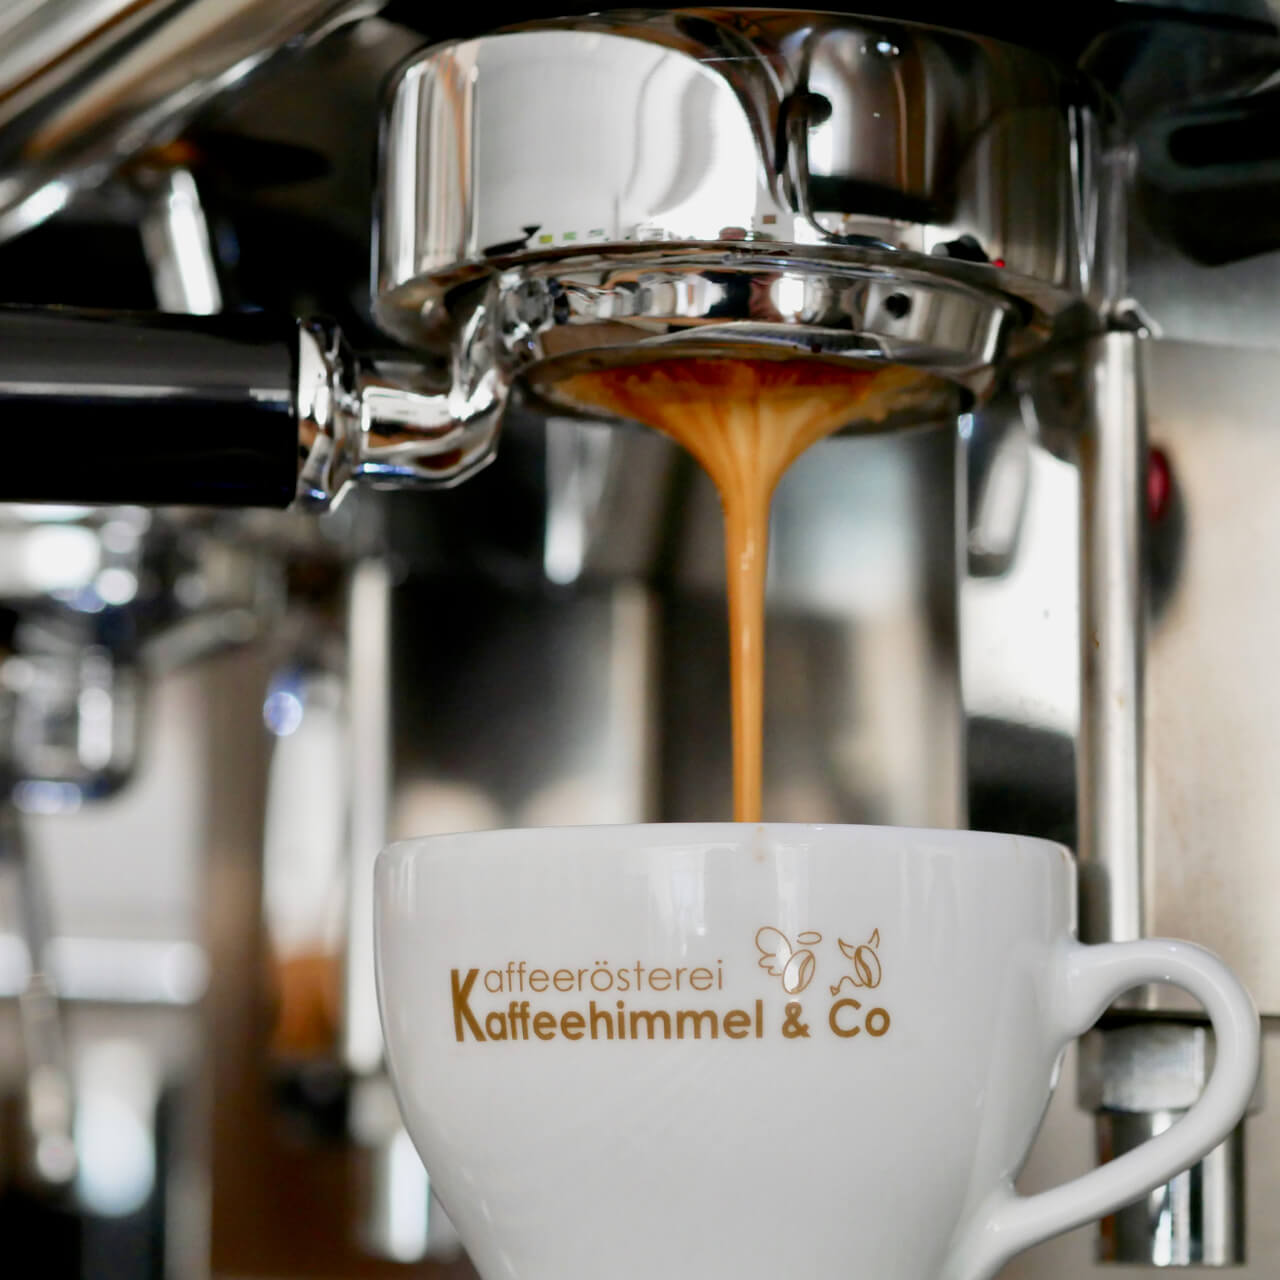 Kaffebar - Kaffeehimmel Rösterei & Co